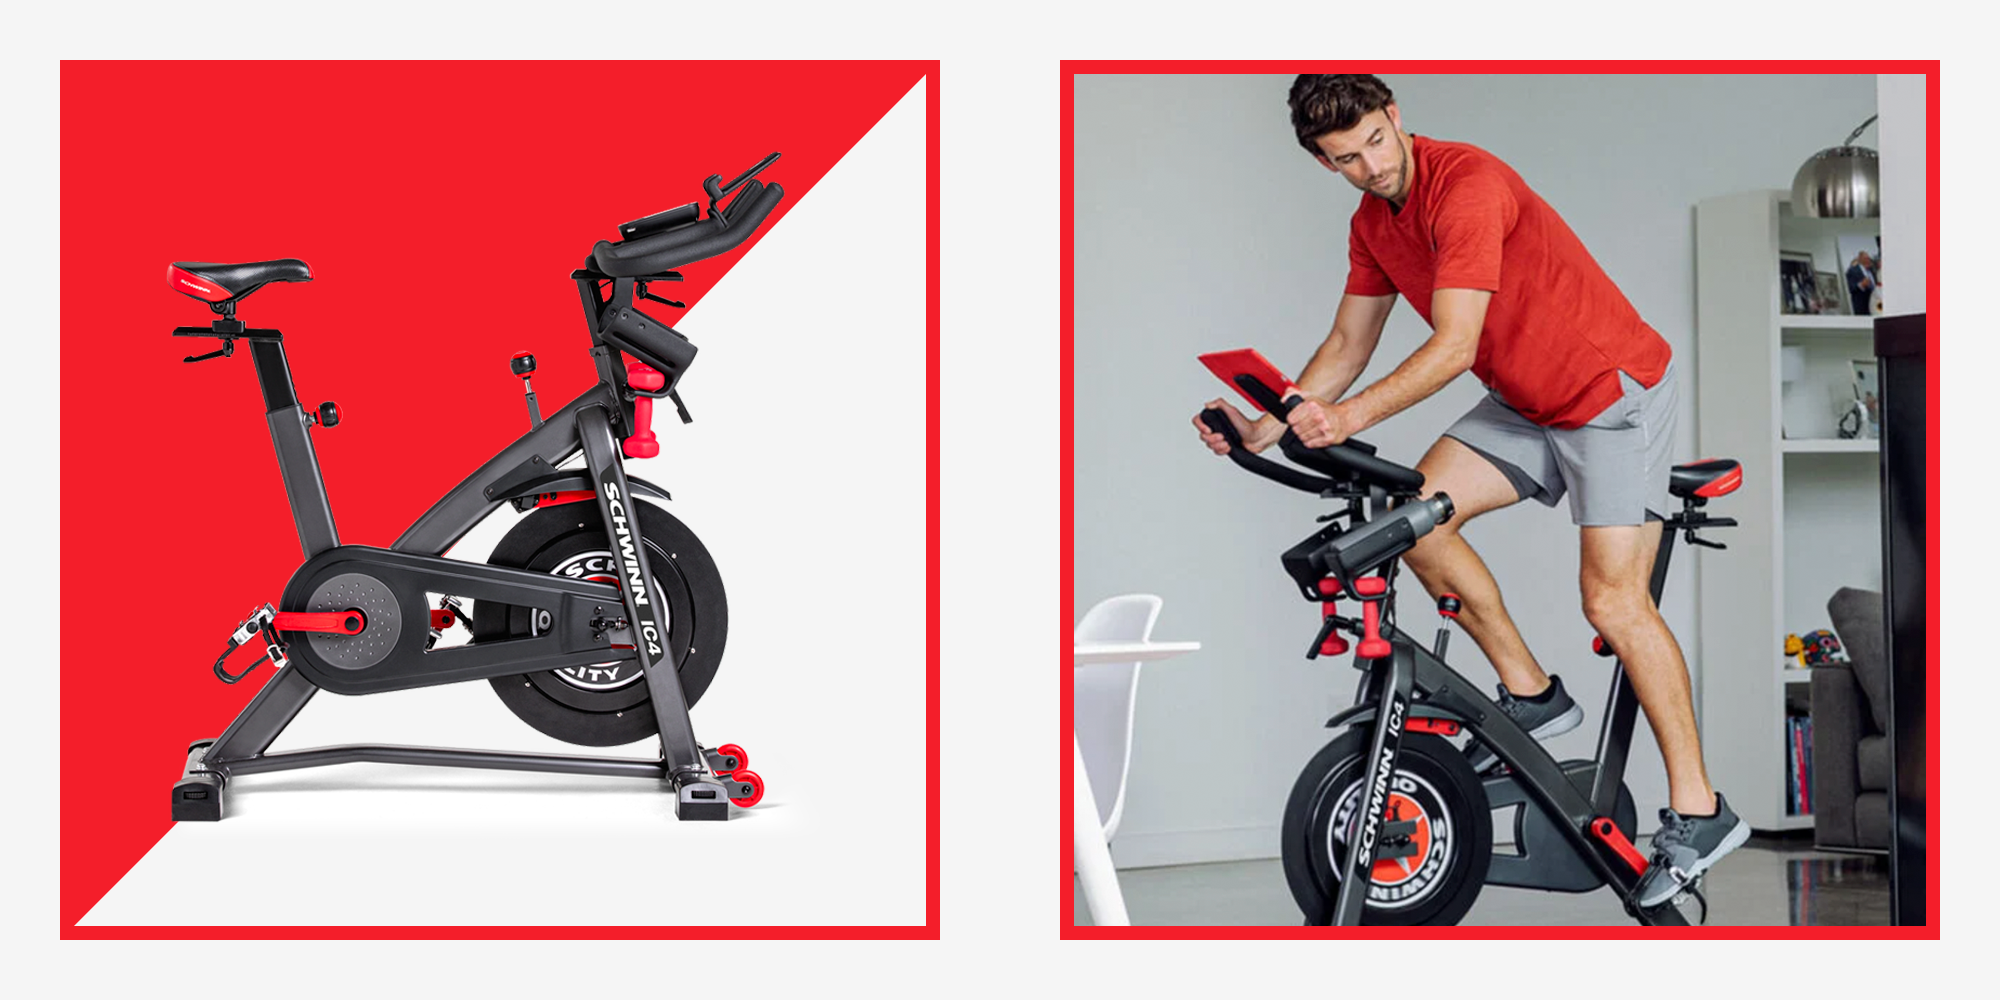 アイボリー×レッド E-Shine Indoor Stationary Bike with Pad Holder, Cycling Bike for  Home Exerc